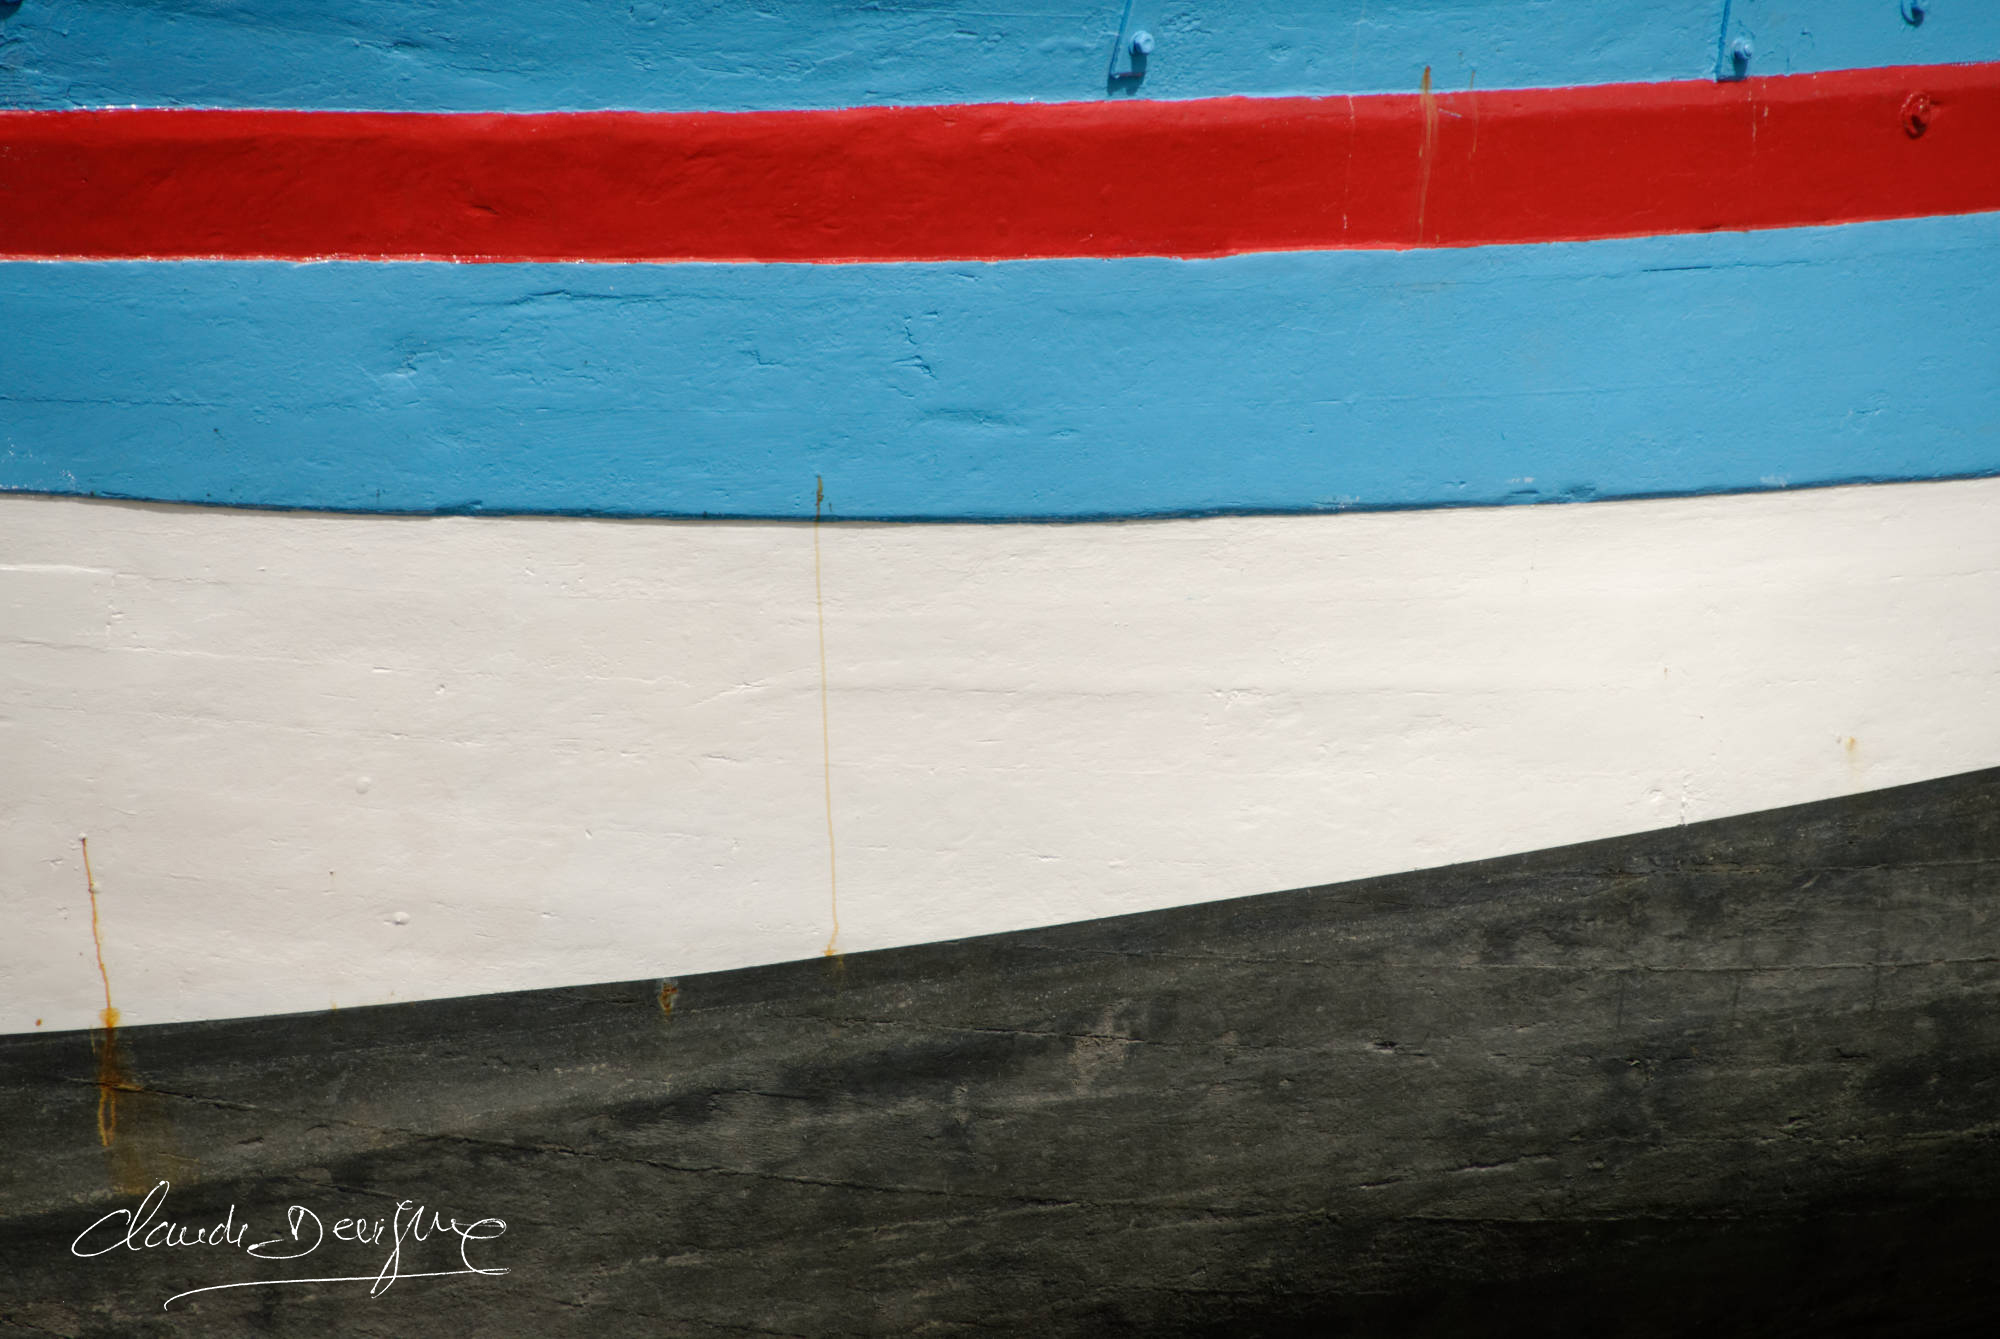 une coque de bateau quatre couleurs rouge bleu blanc et noir